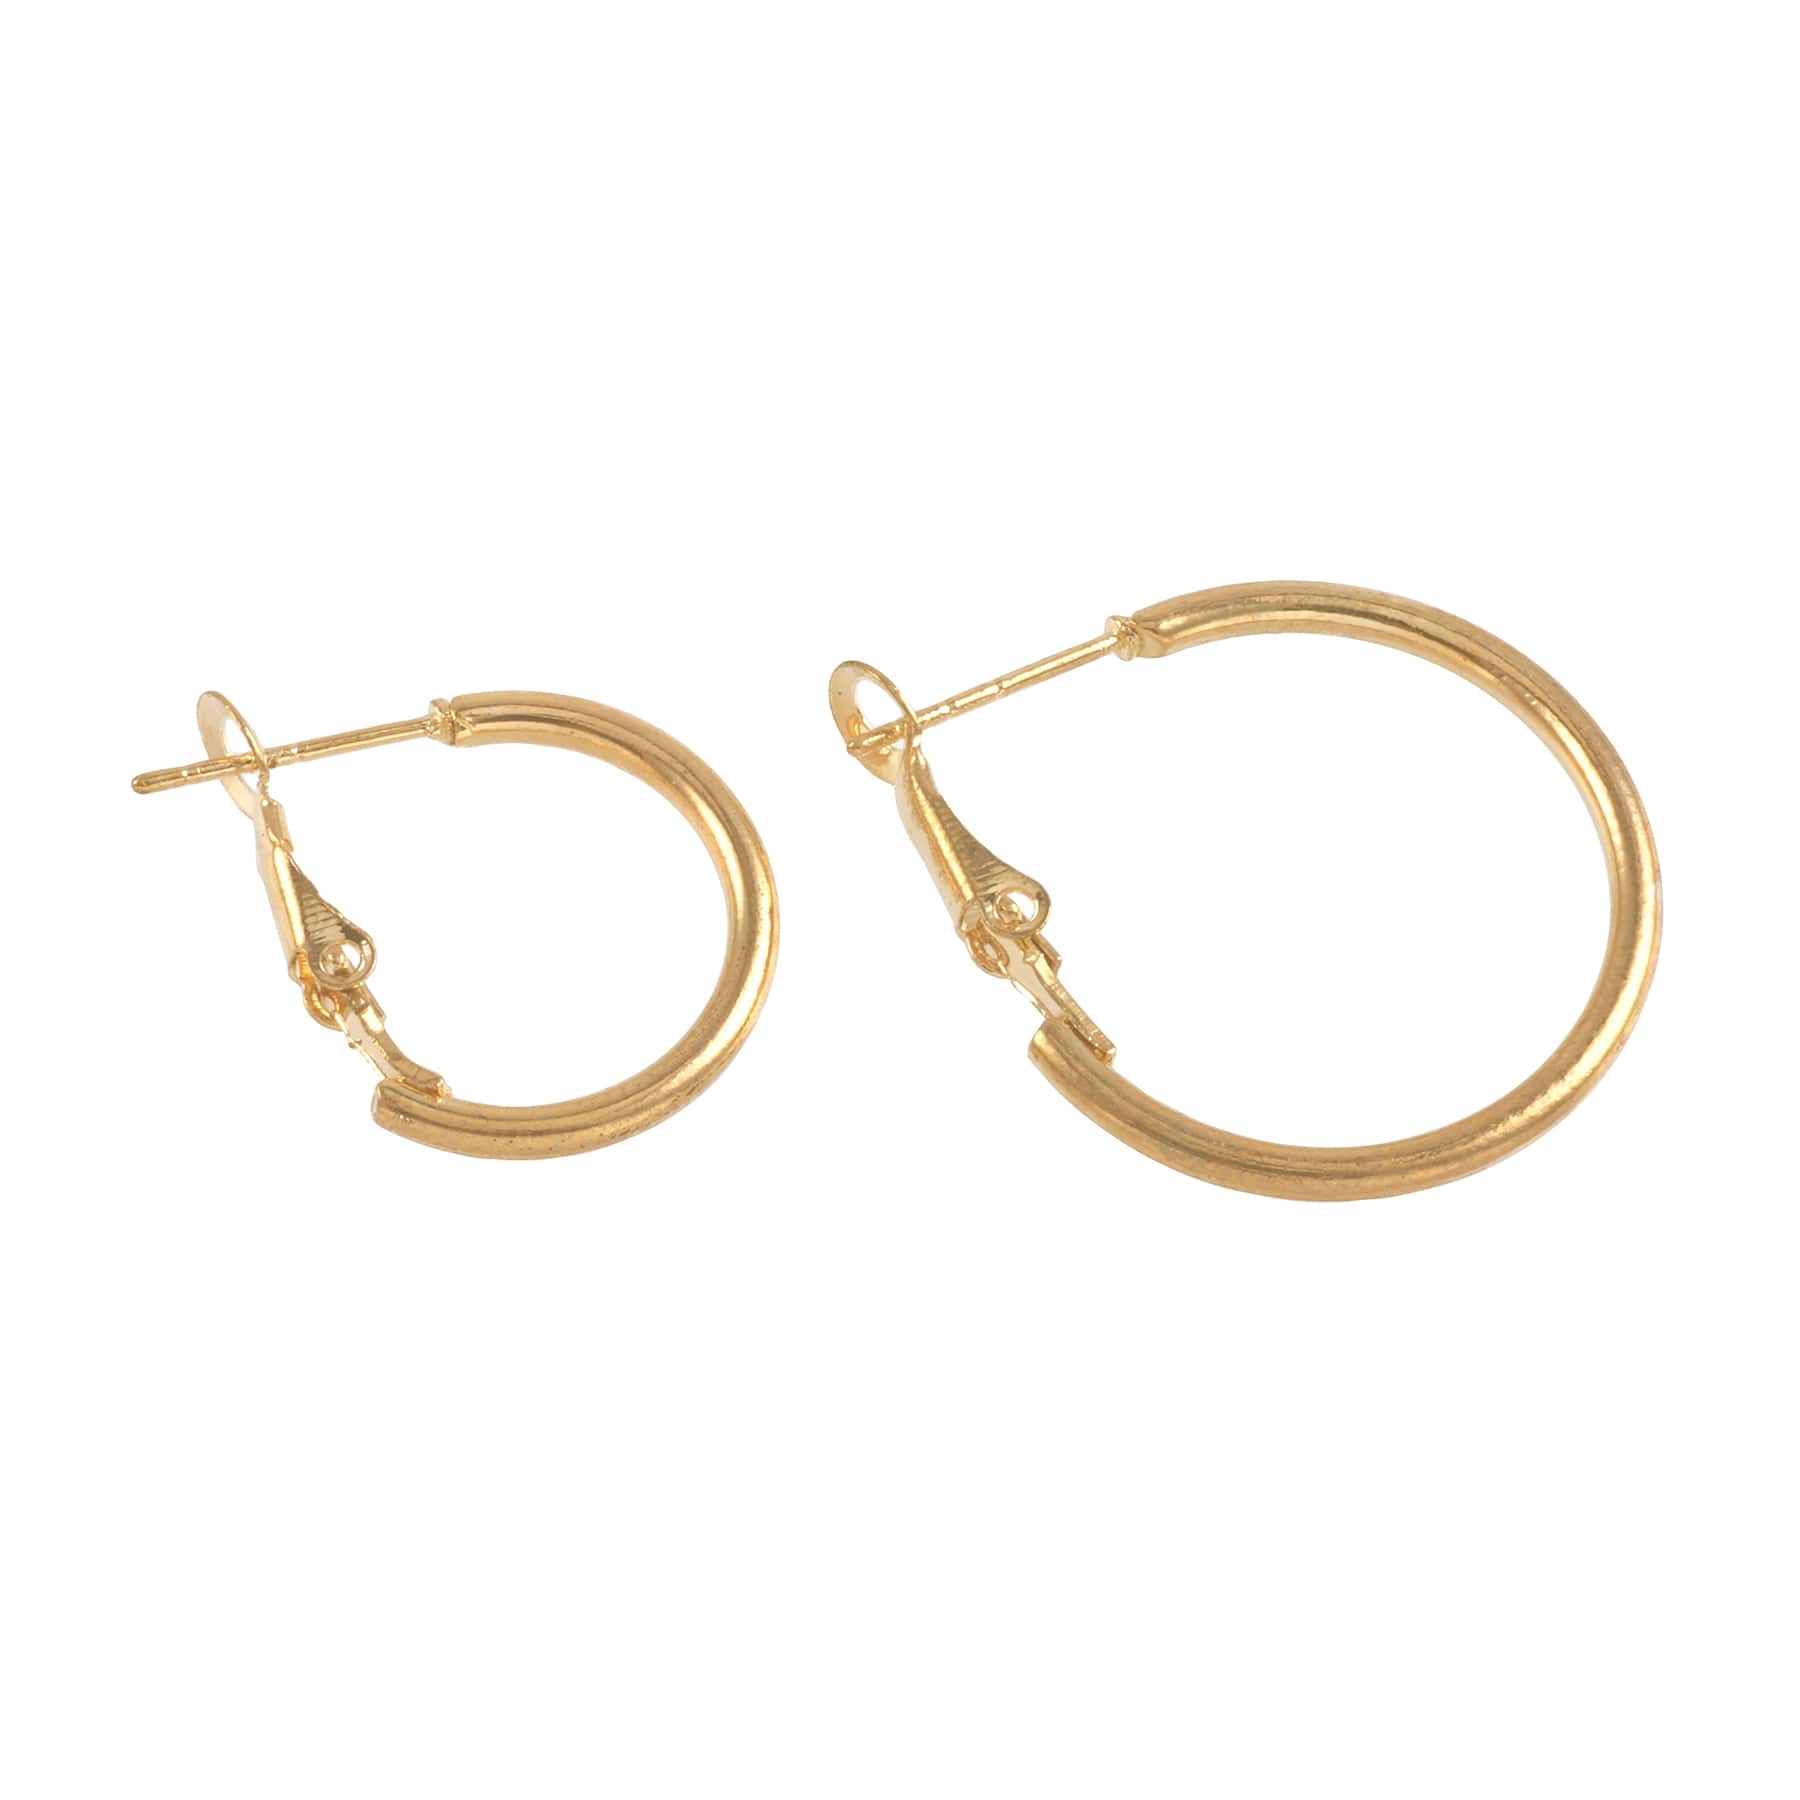 12 Packs: 4 ct. (48 total) Premium Metals Gold Hoop Earrings by Bead Landing&#x2122;